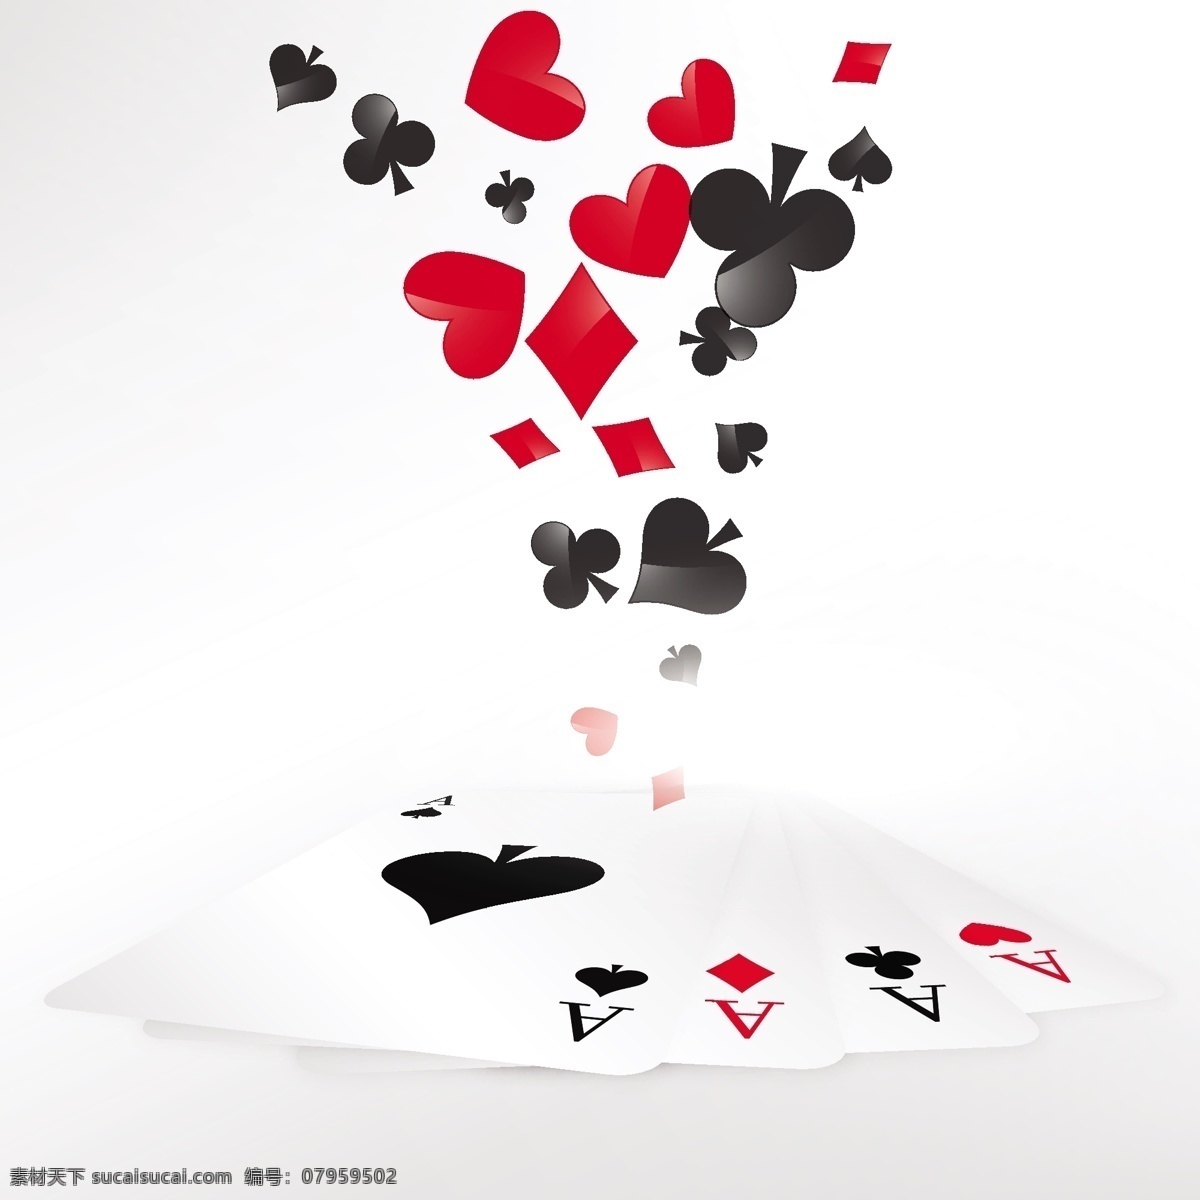 扑克牌背景 背景 心 卡 钻石 图形 游戏 黑人 赢家 赌场 成功 扑克 造型 胜利 俱乐部 打牌 比赛 元素